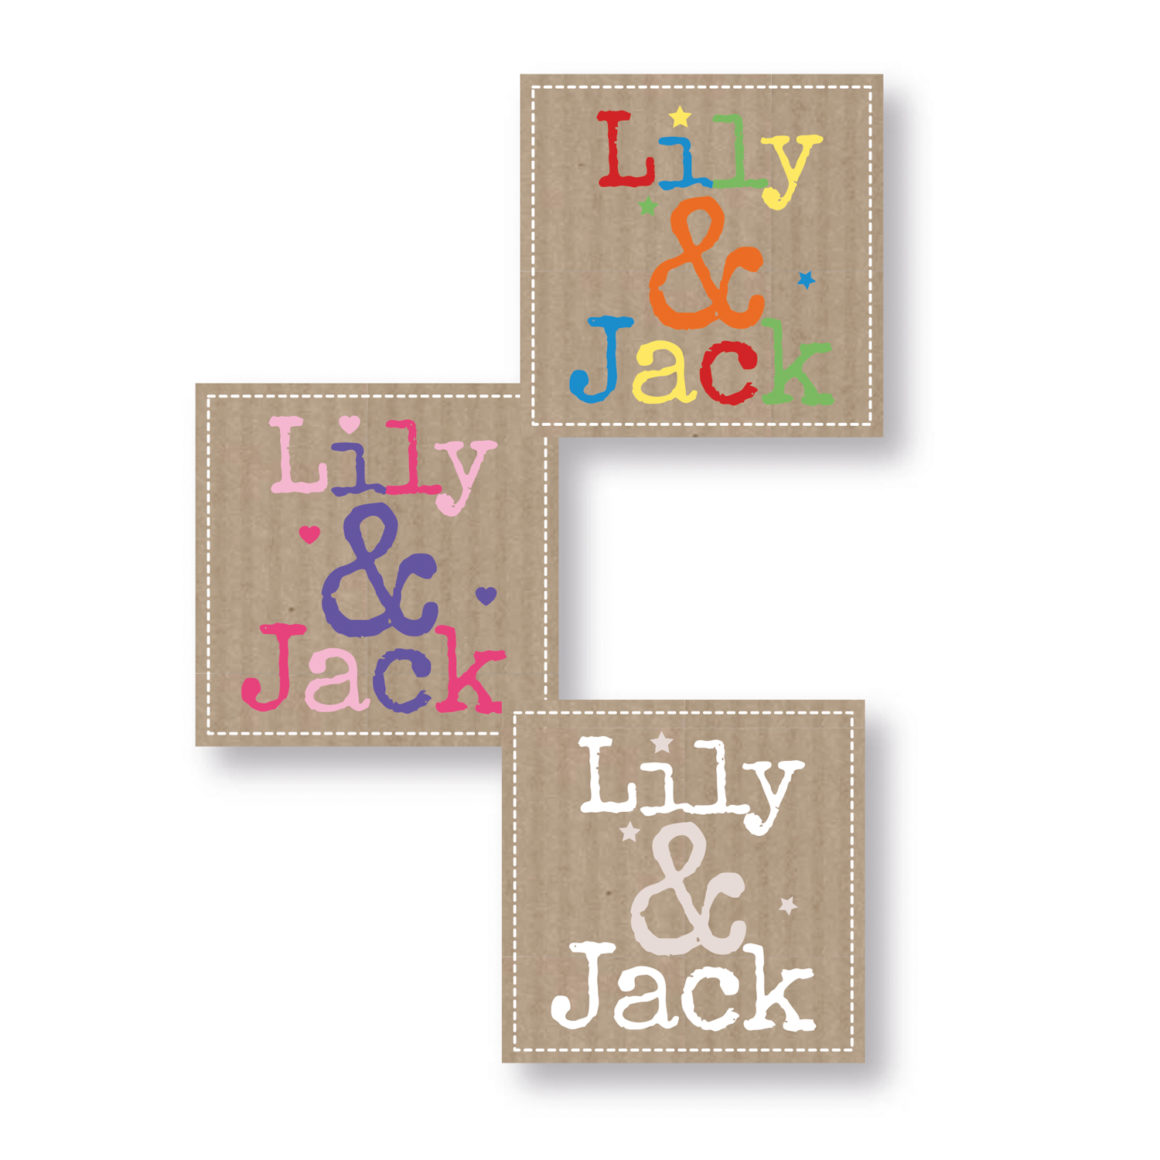 Lily & Jack  